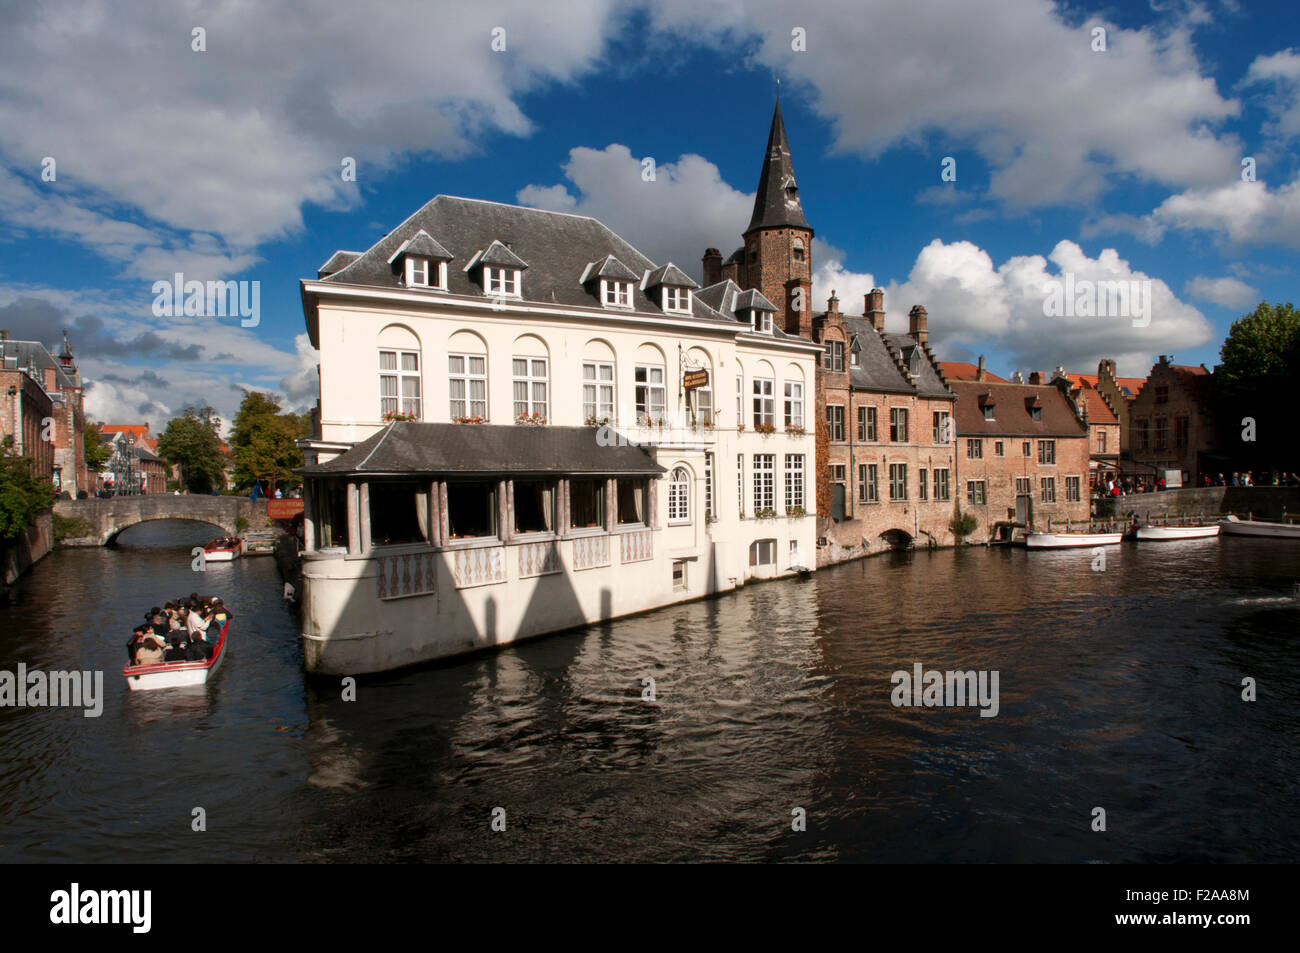 En raison de ses canaux Bruges est souvent appelé "la Venise du Nord'. La situation de l'eau dans les deux villes était toutefois très di Banque D'Images